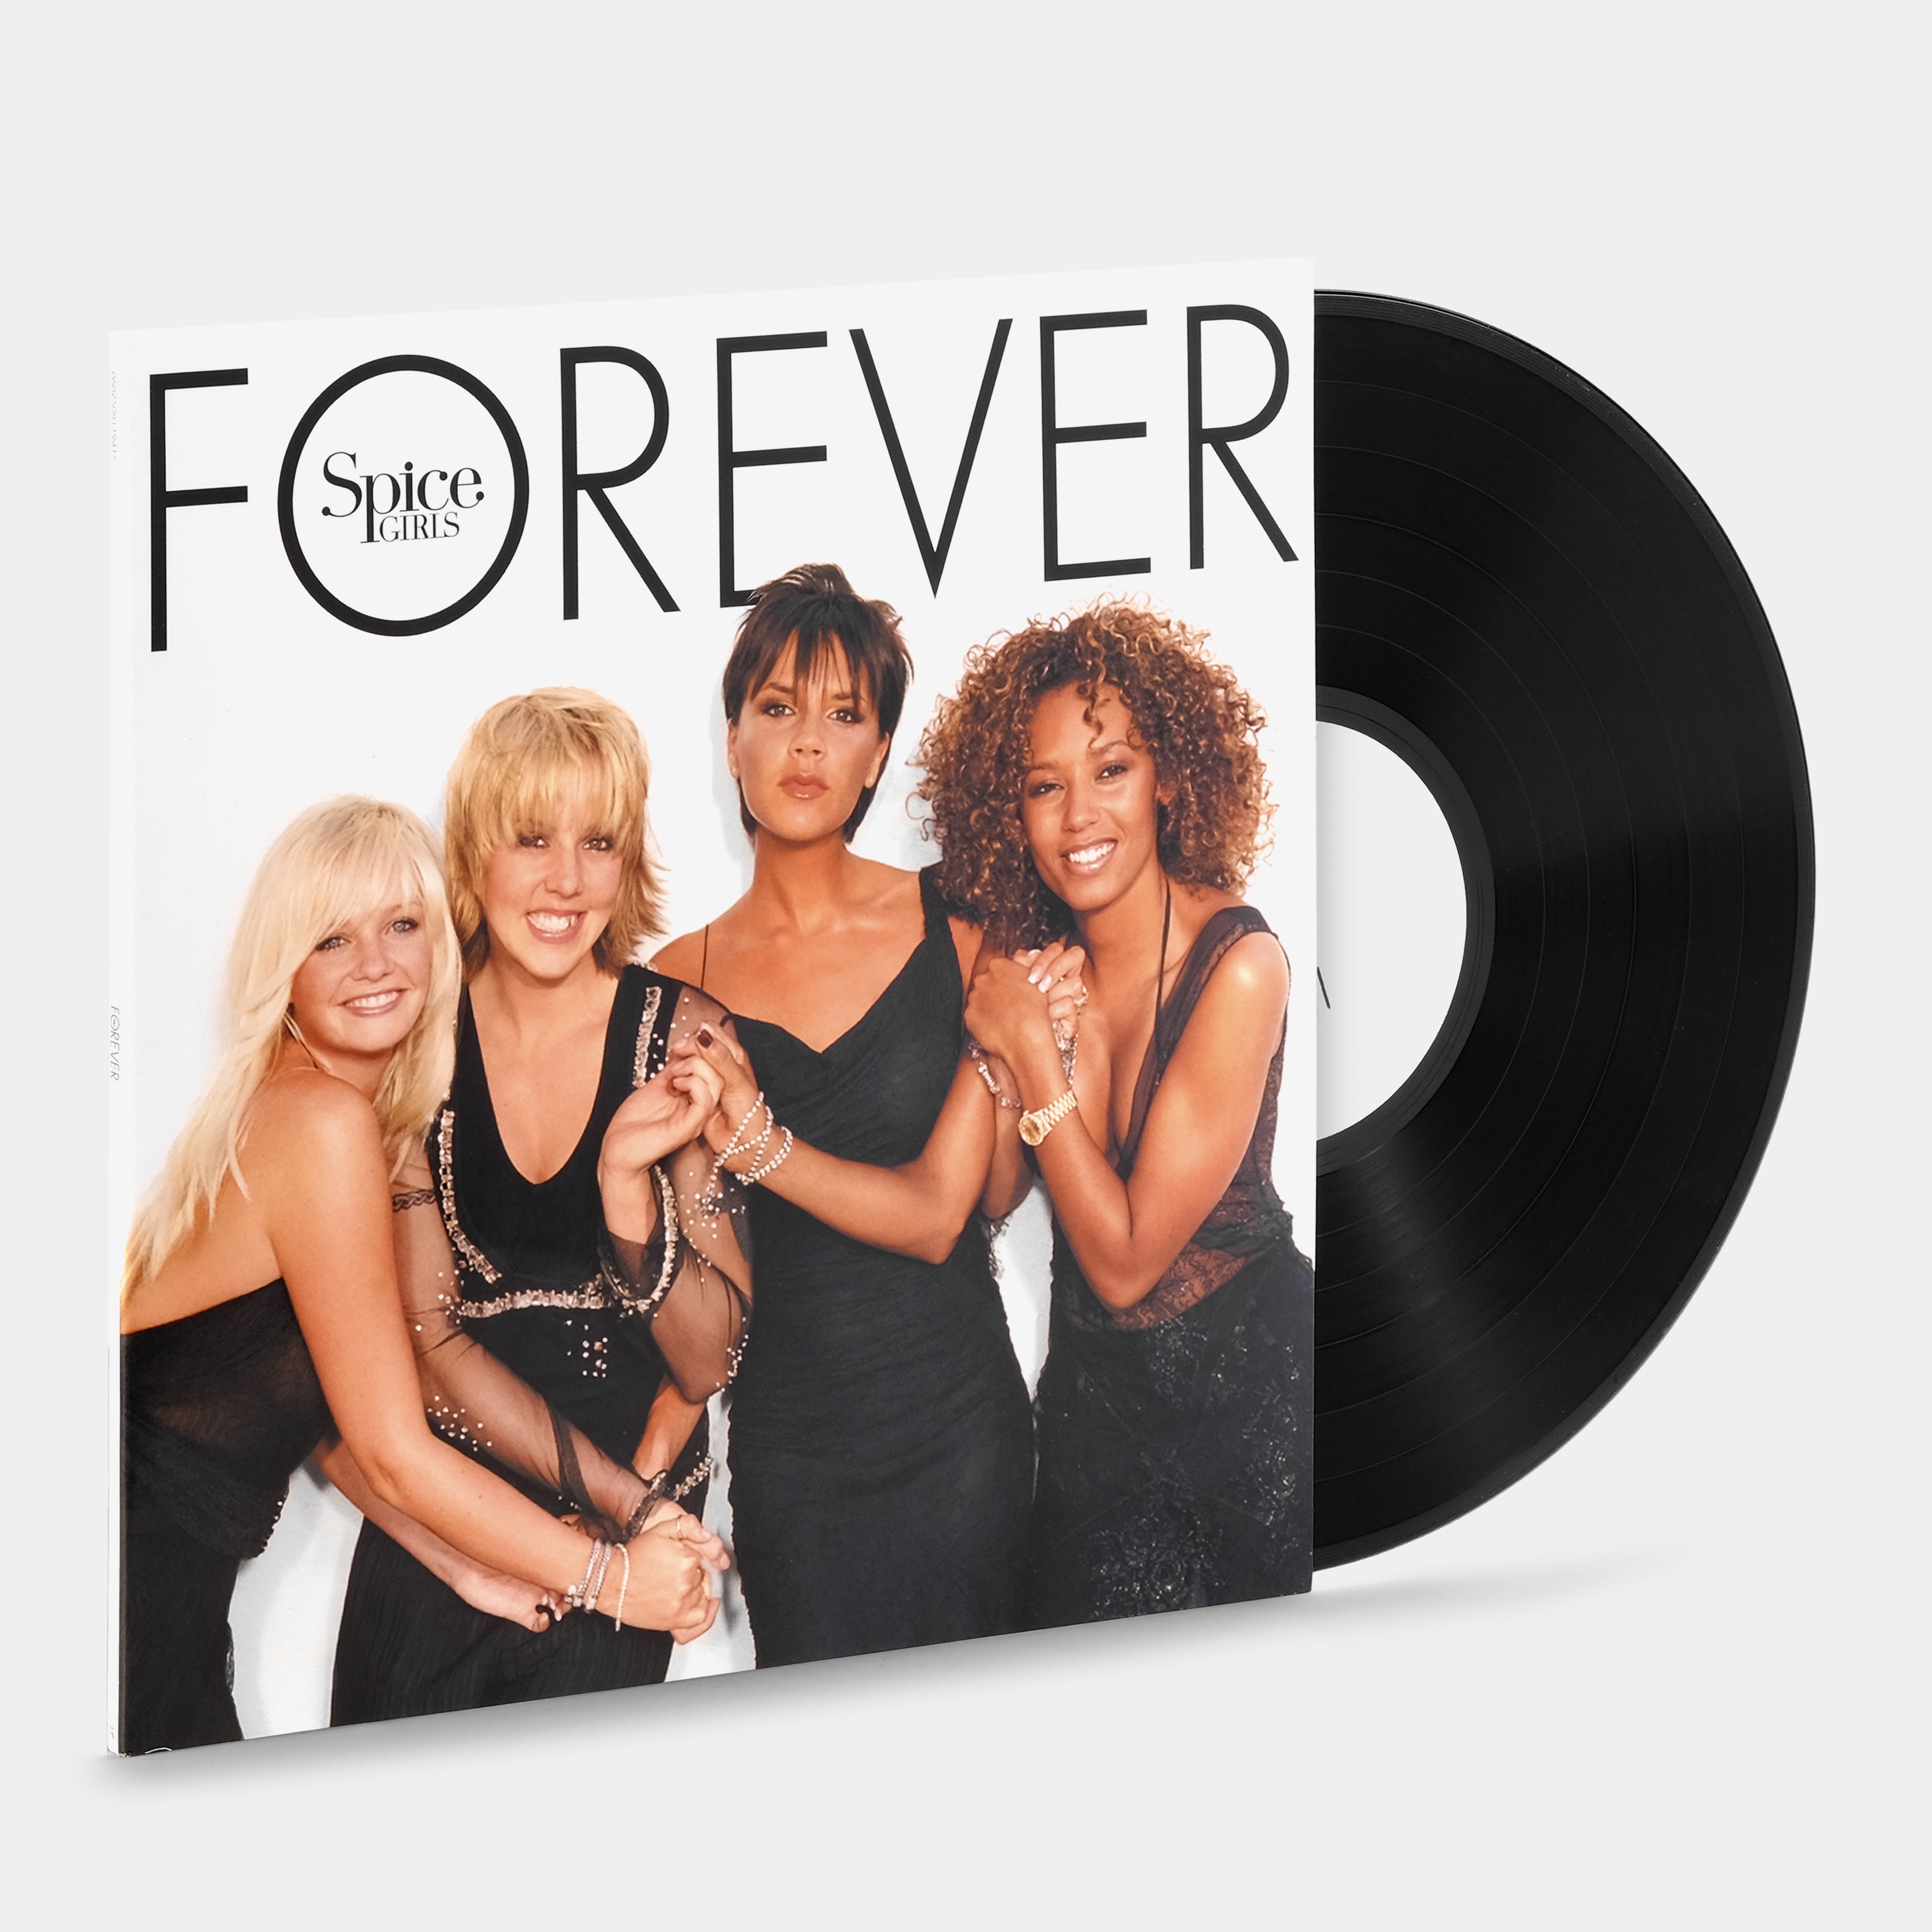 Spice Girls - Forever LP Vinyl Record